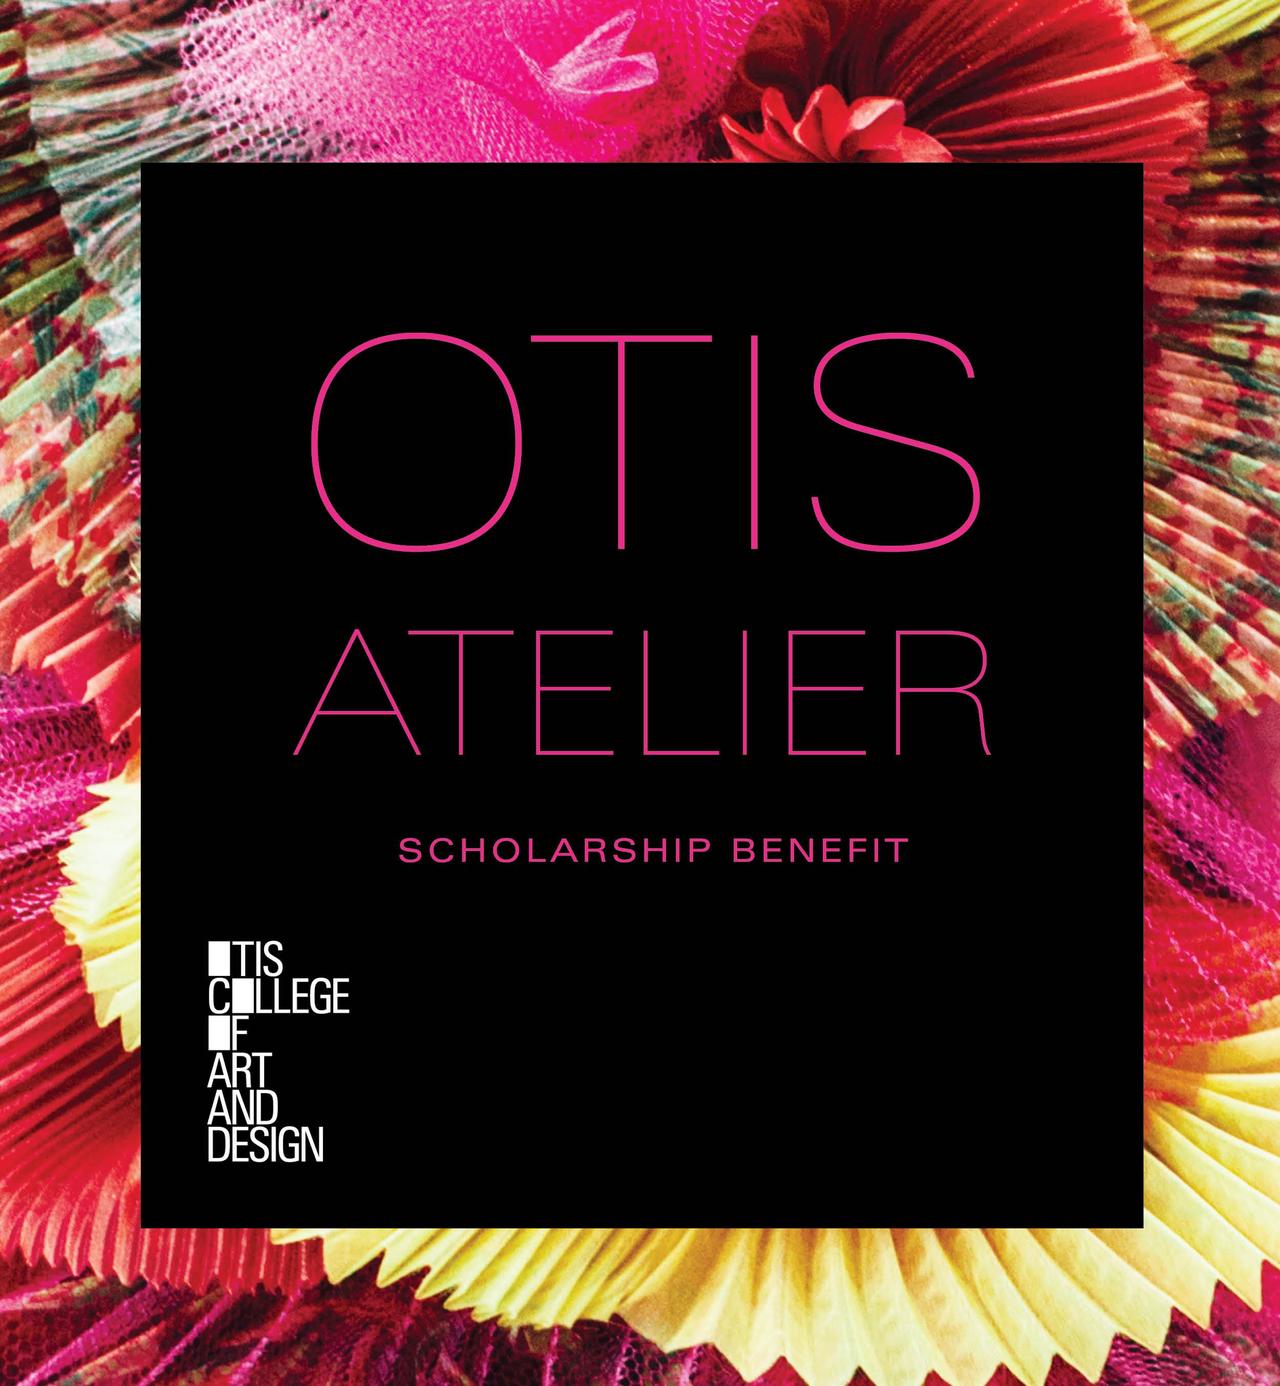 Otis Atelier invite image